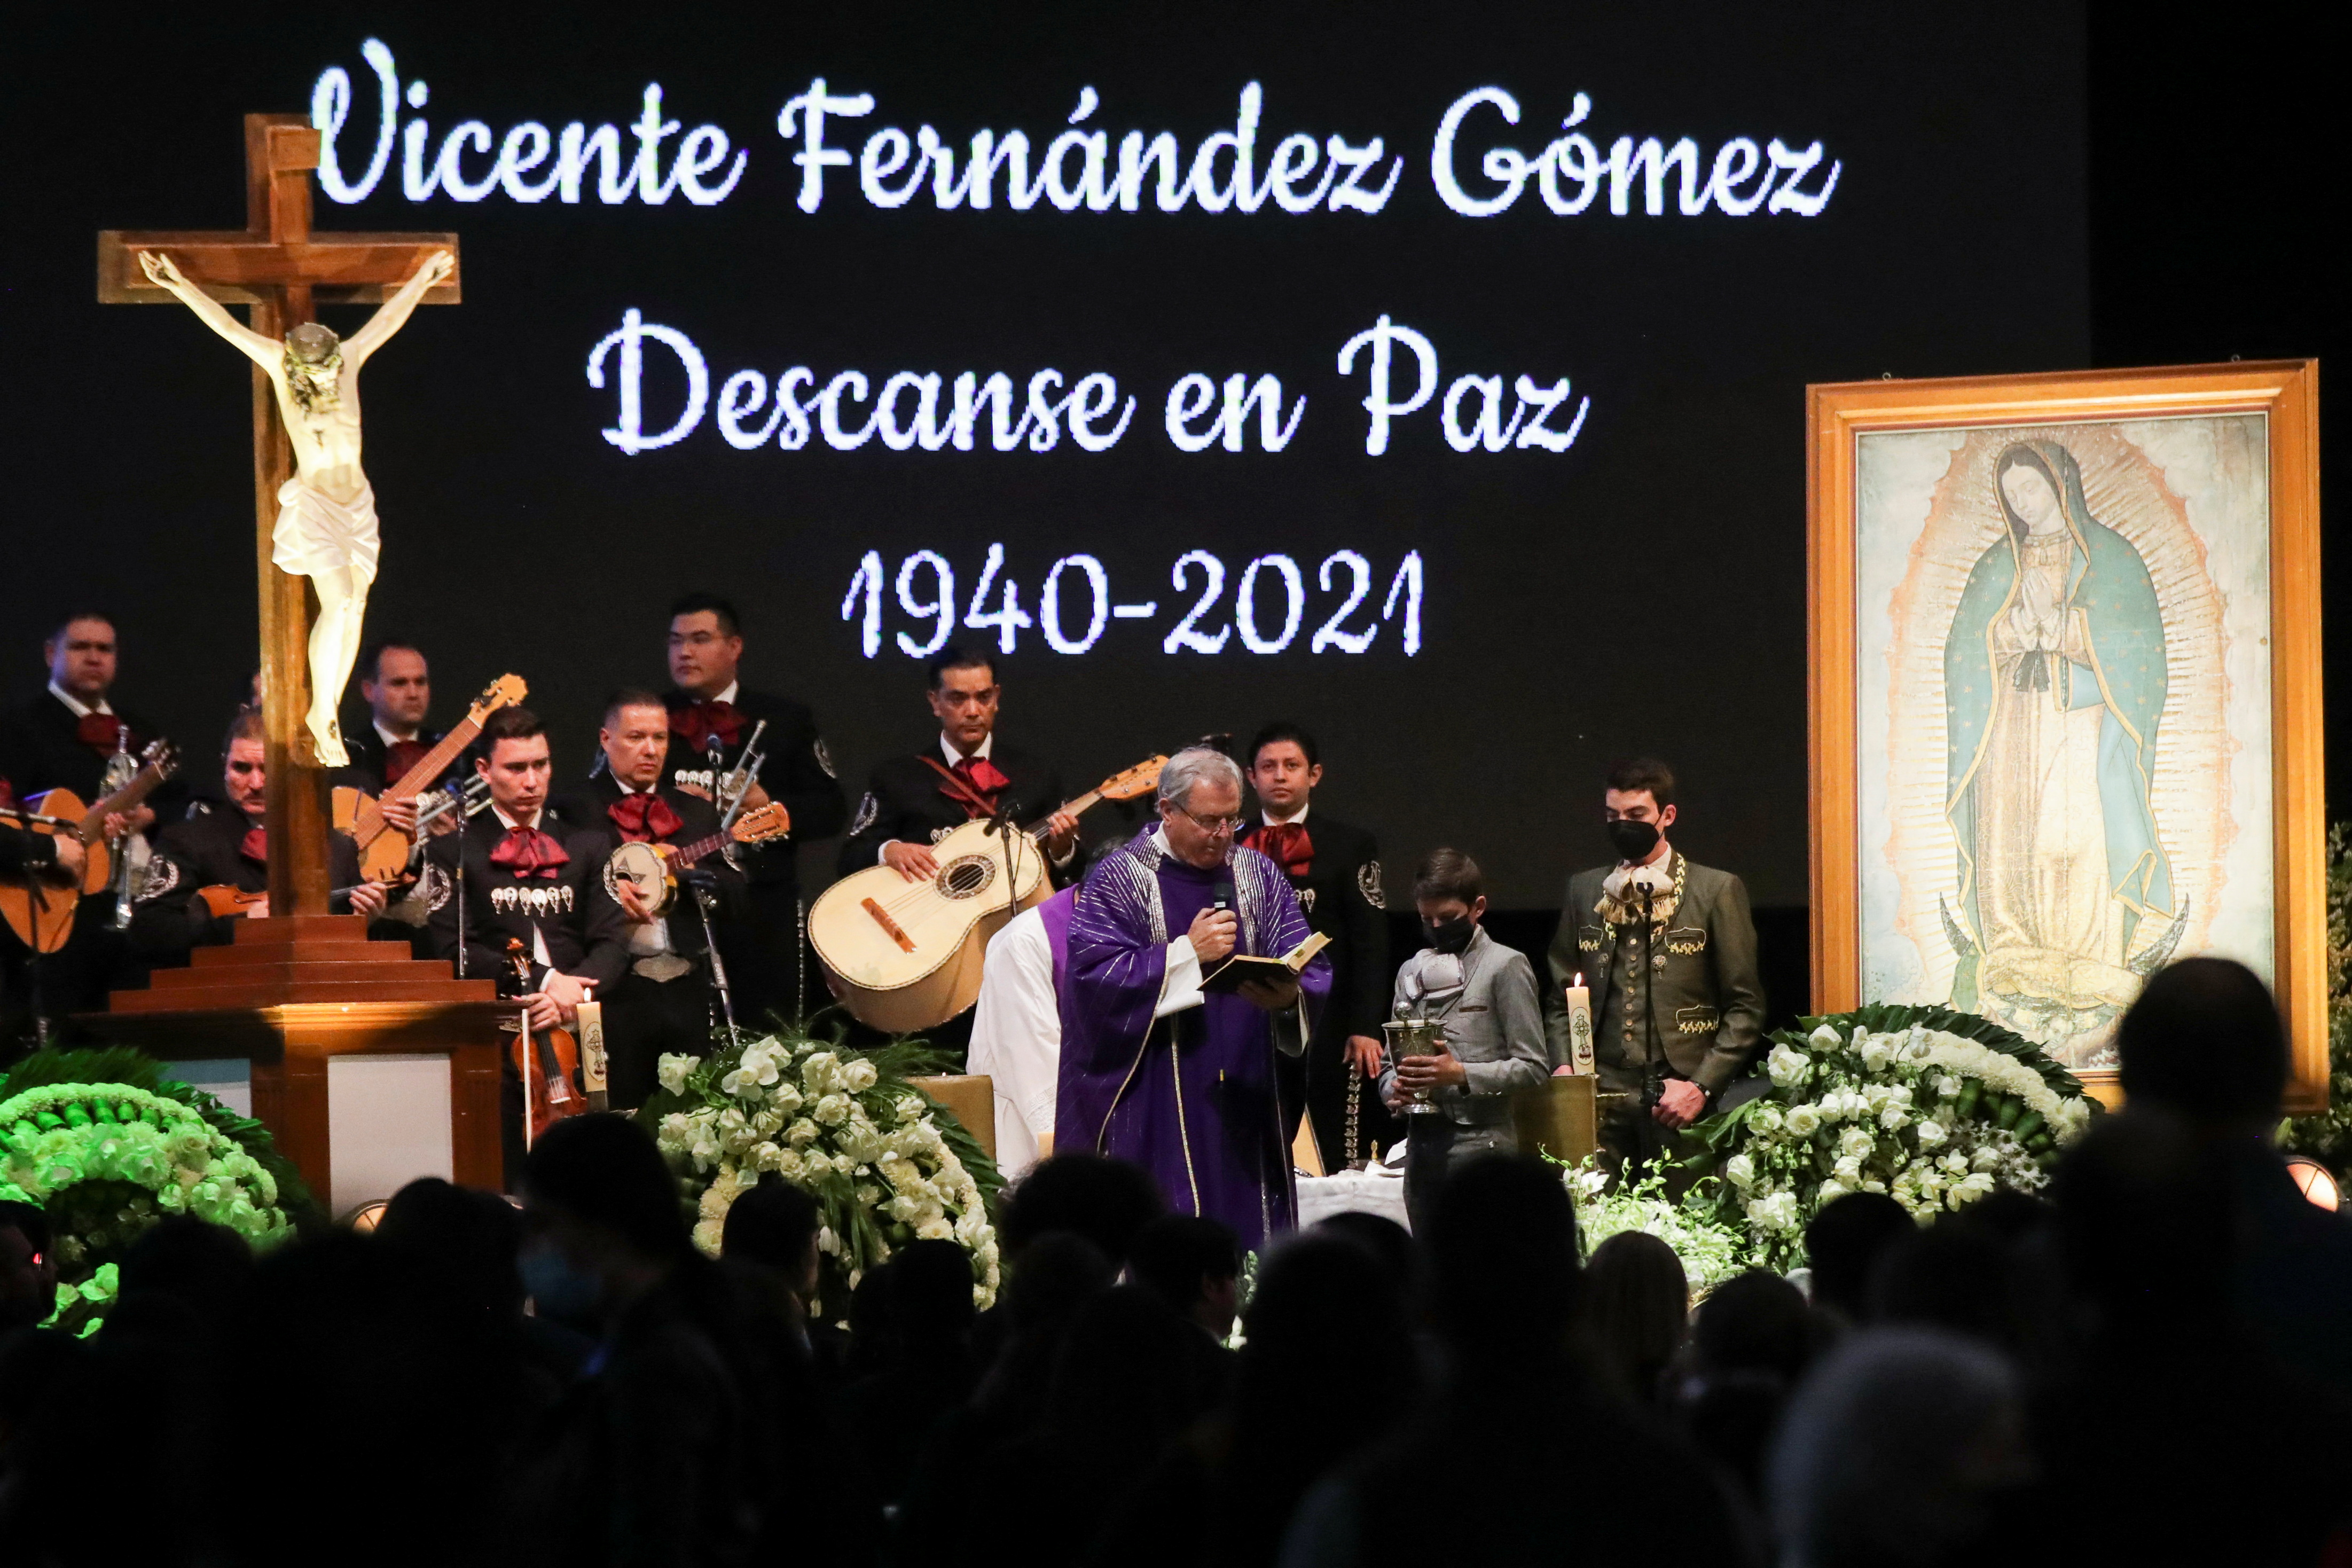 Un teoría apuntaba a que el cantante habría fallecido antes del 12 de diciembre, pero sacerdote lo desmintió (Foto: REUTERS/Henry Romero)